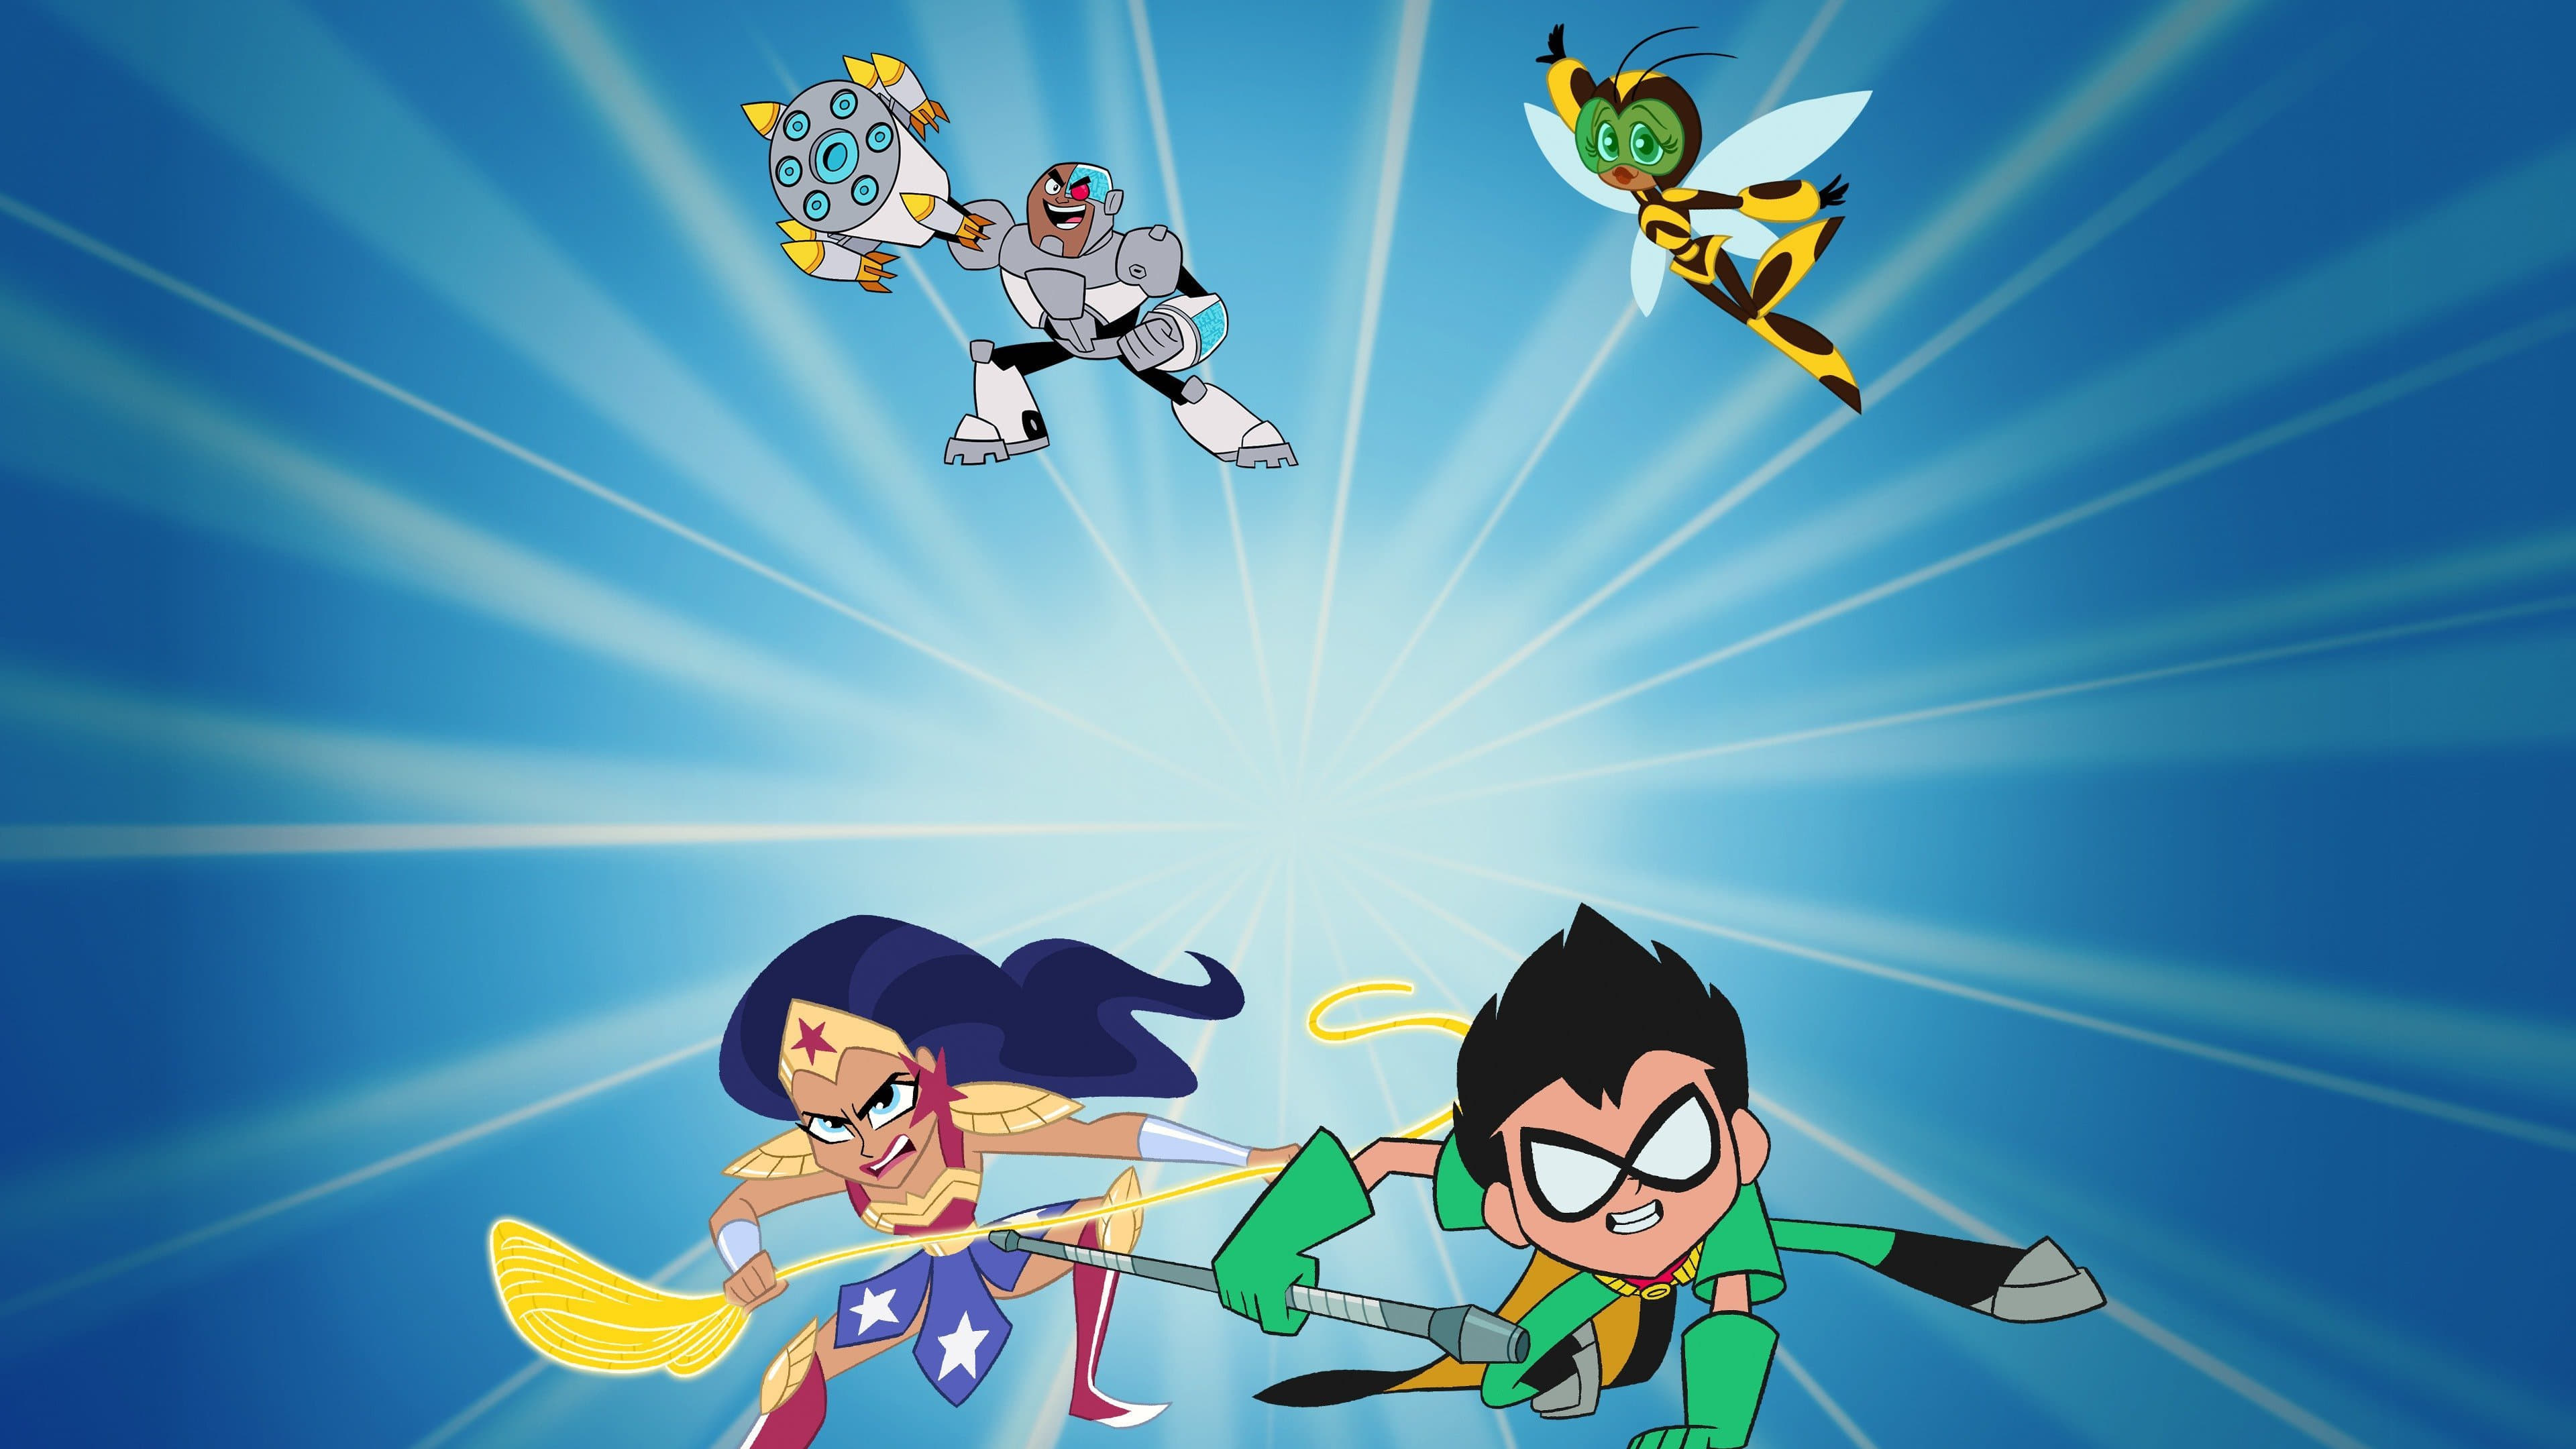 Teen Titans Go! & Các Nữ Siêu Anh Hùng Dc: Mayhem Trong Đa Vũ Trụ - Teen Titans Go! & DC Super Hero Girls: Mayhem in the Multiverse